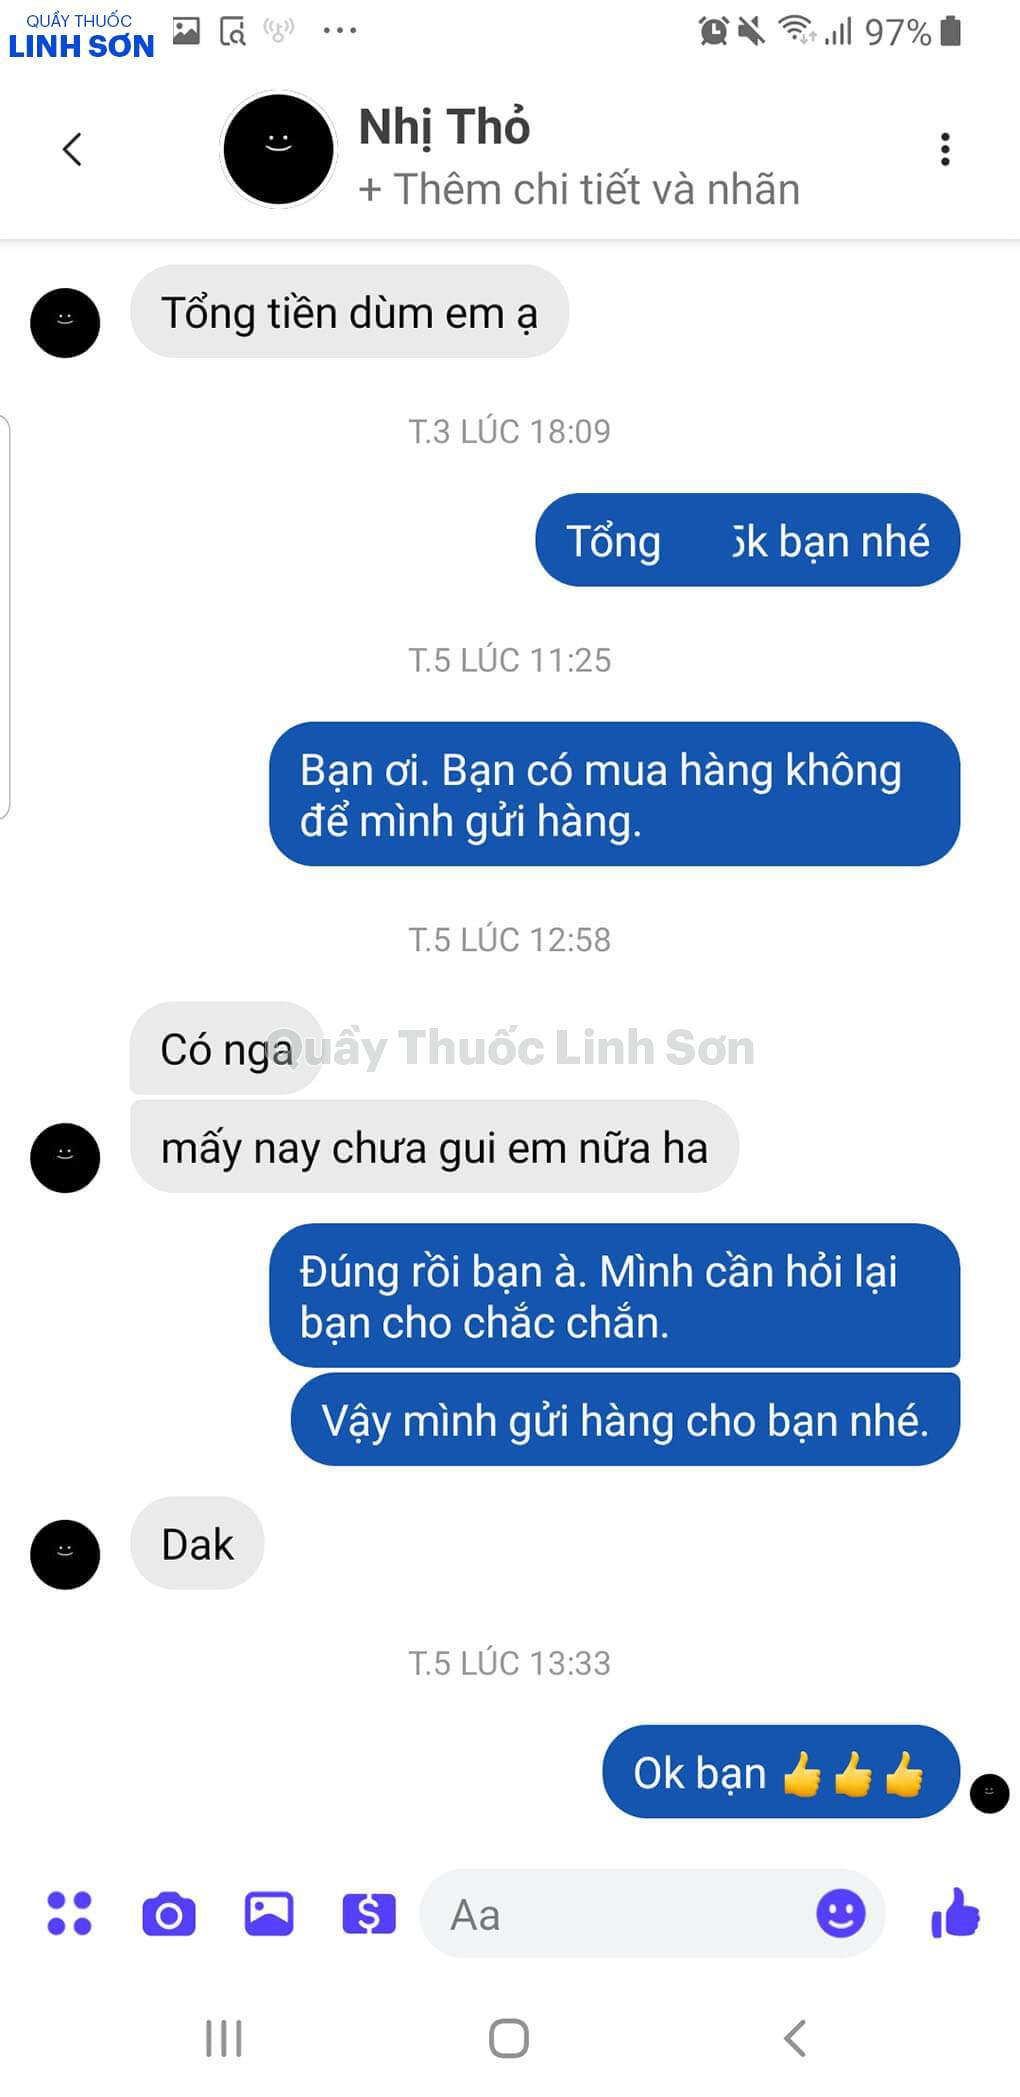 Facebook bạn Nhị Thỏ ở Kiên Giang mua Dầu gội Shitinsof Hán Phương Linh Chi đen tóc